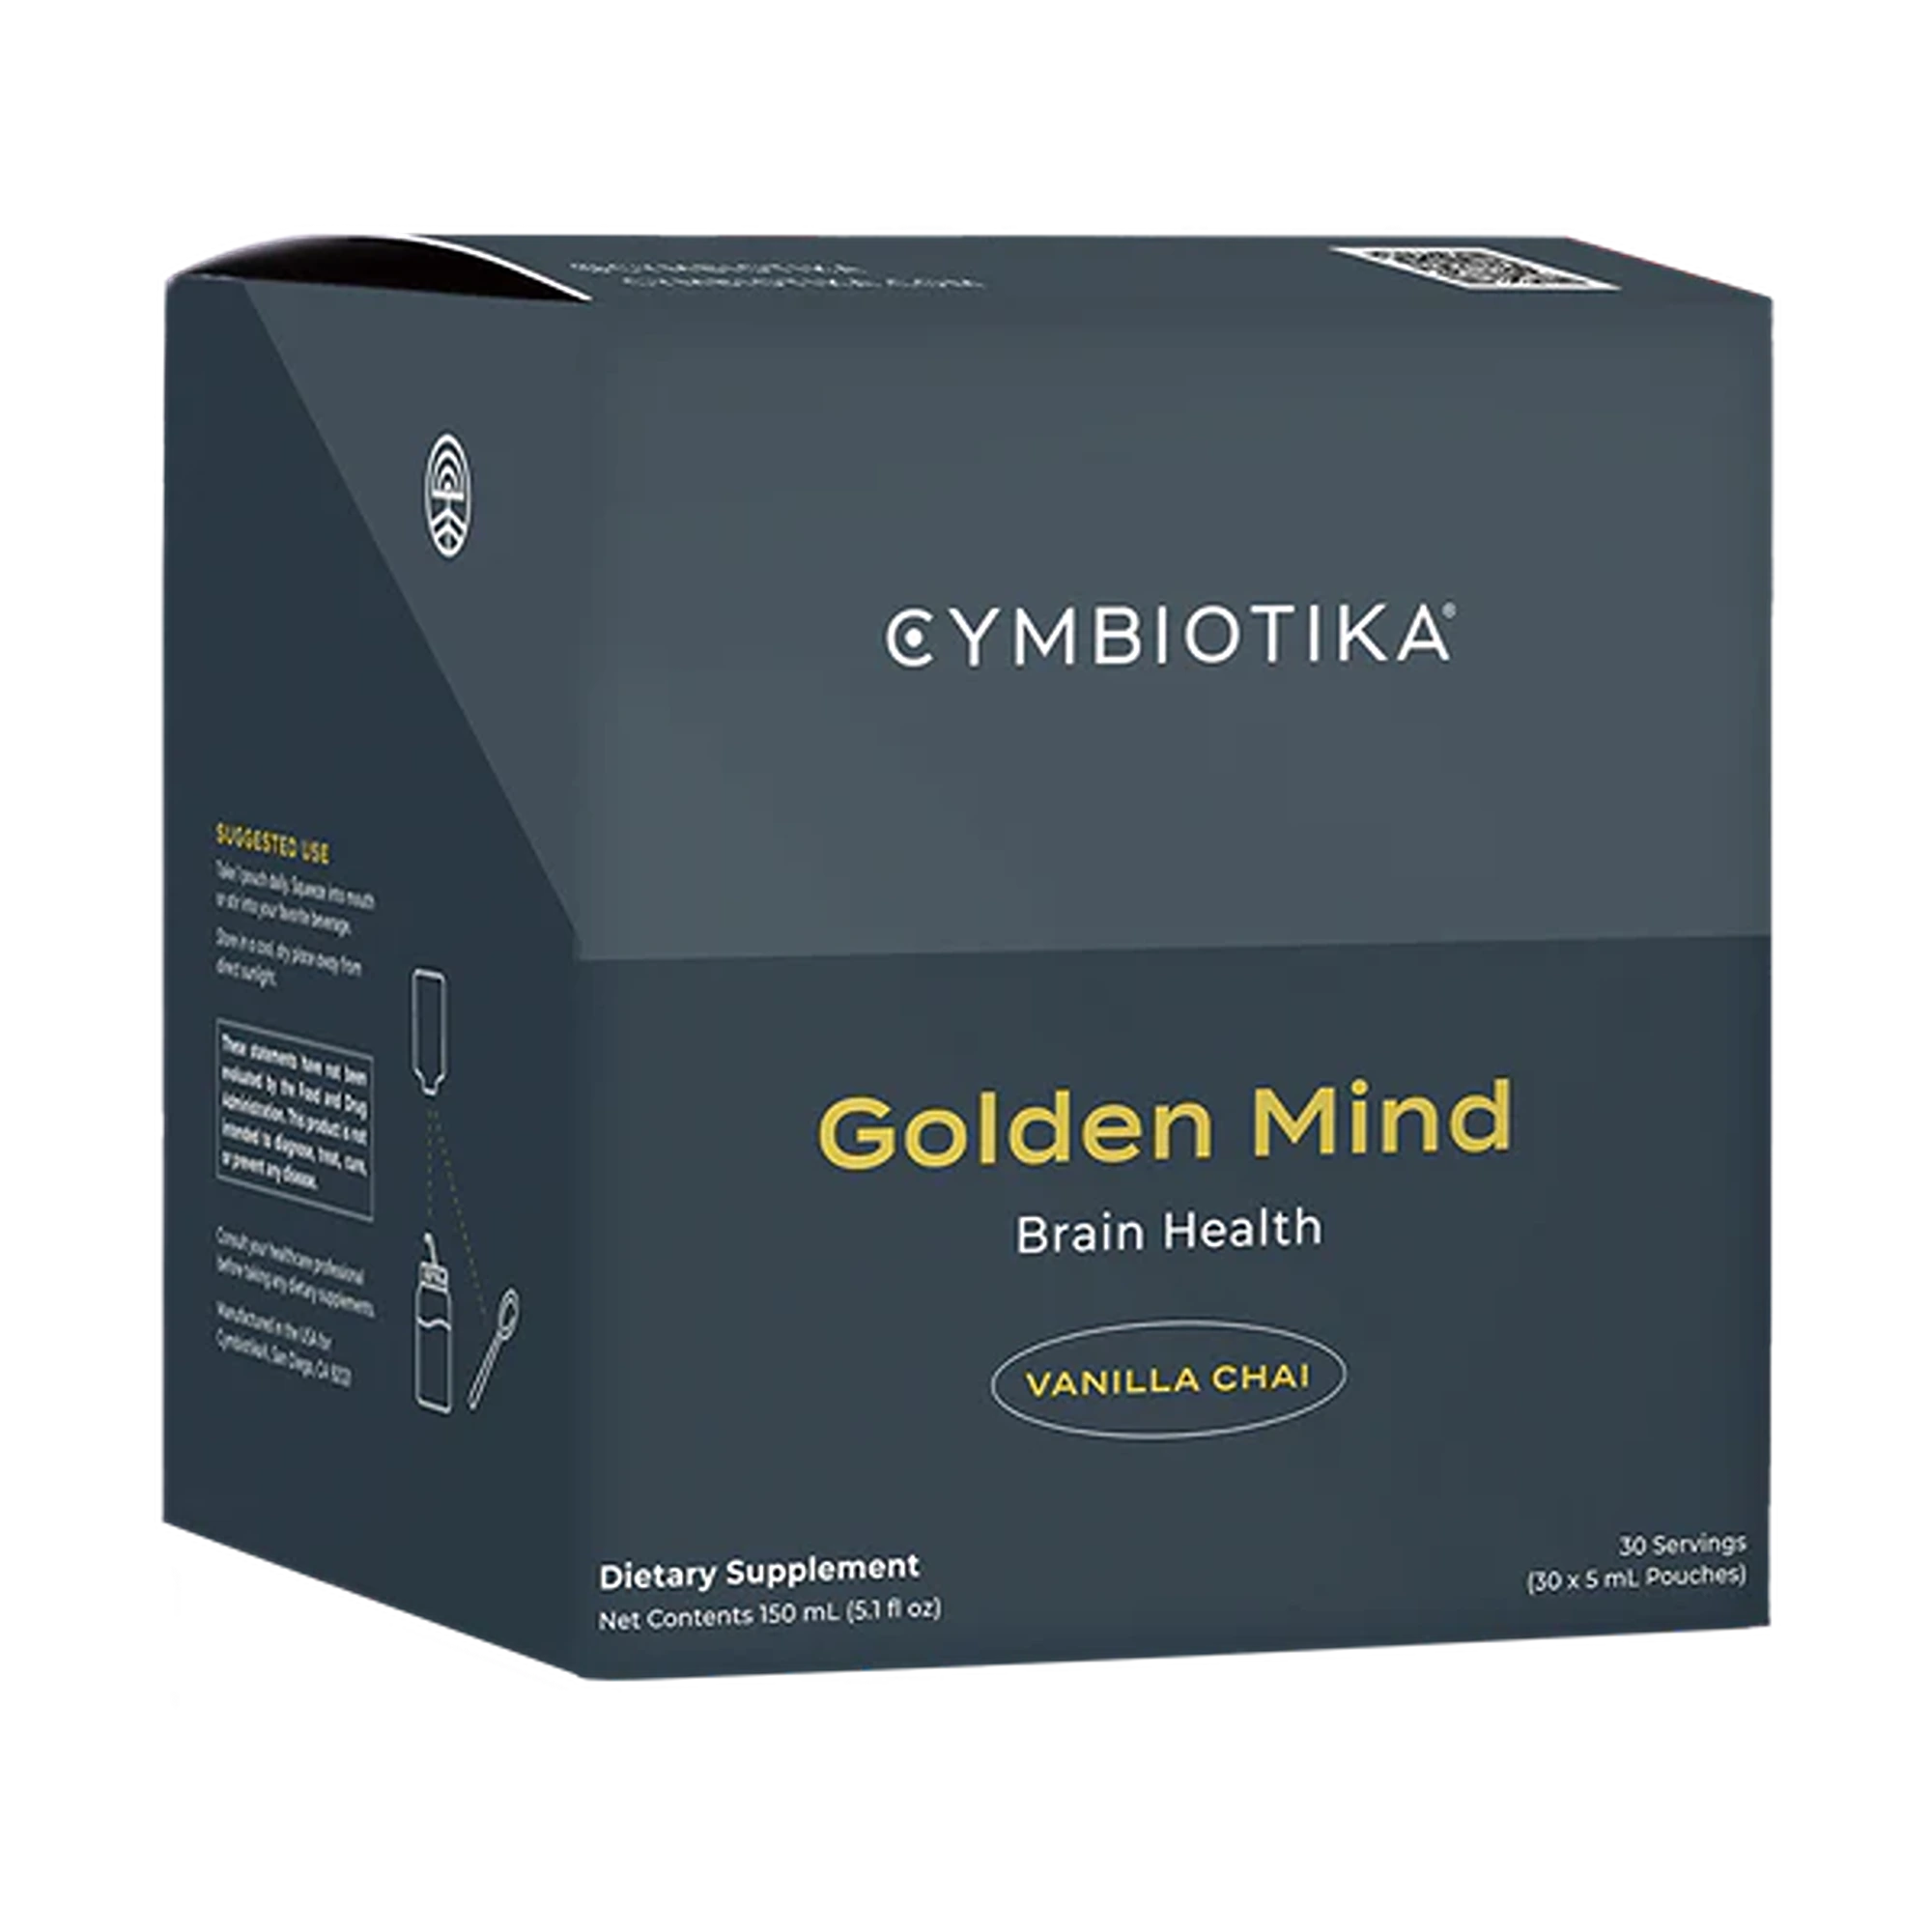 Cymbiotika Golden Mind 30 x 5mL